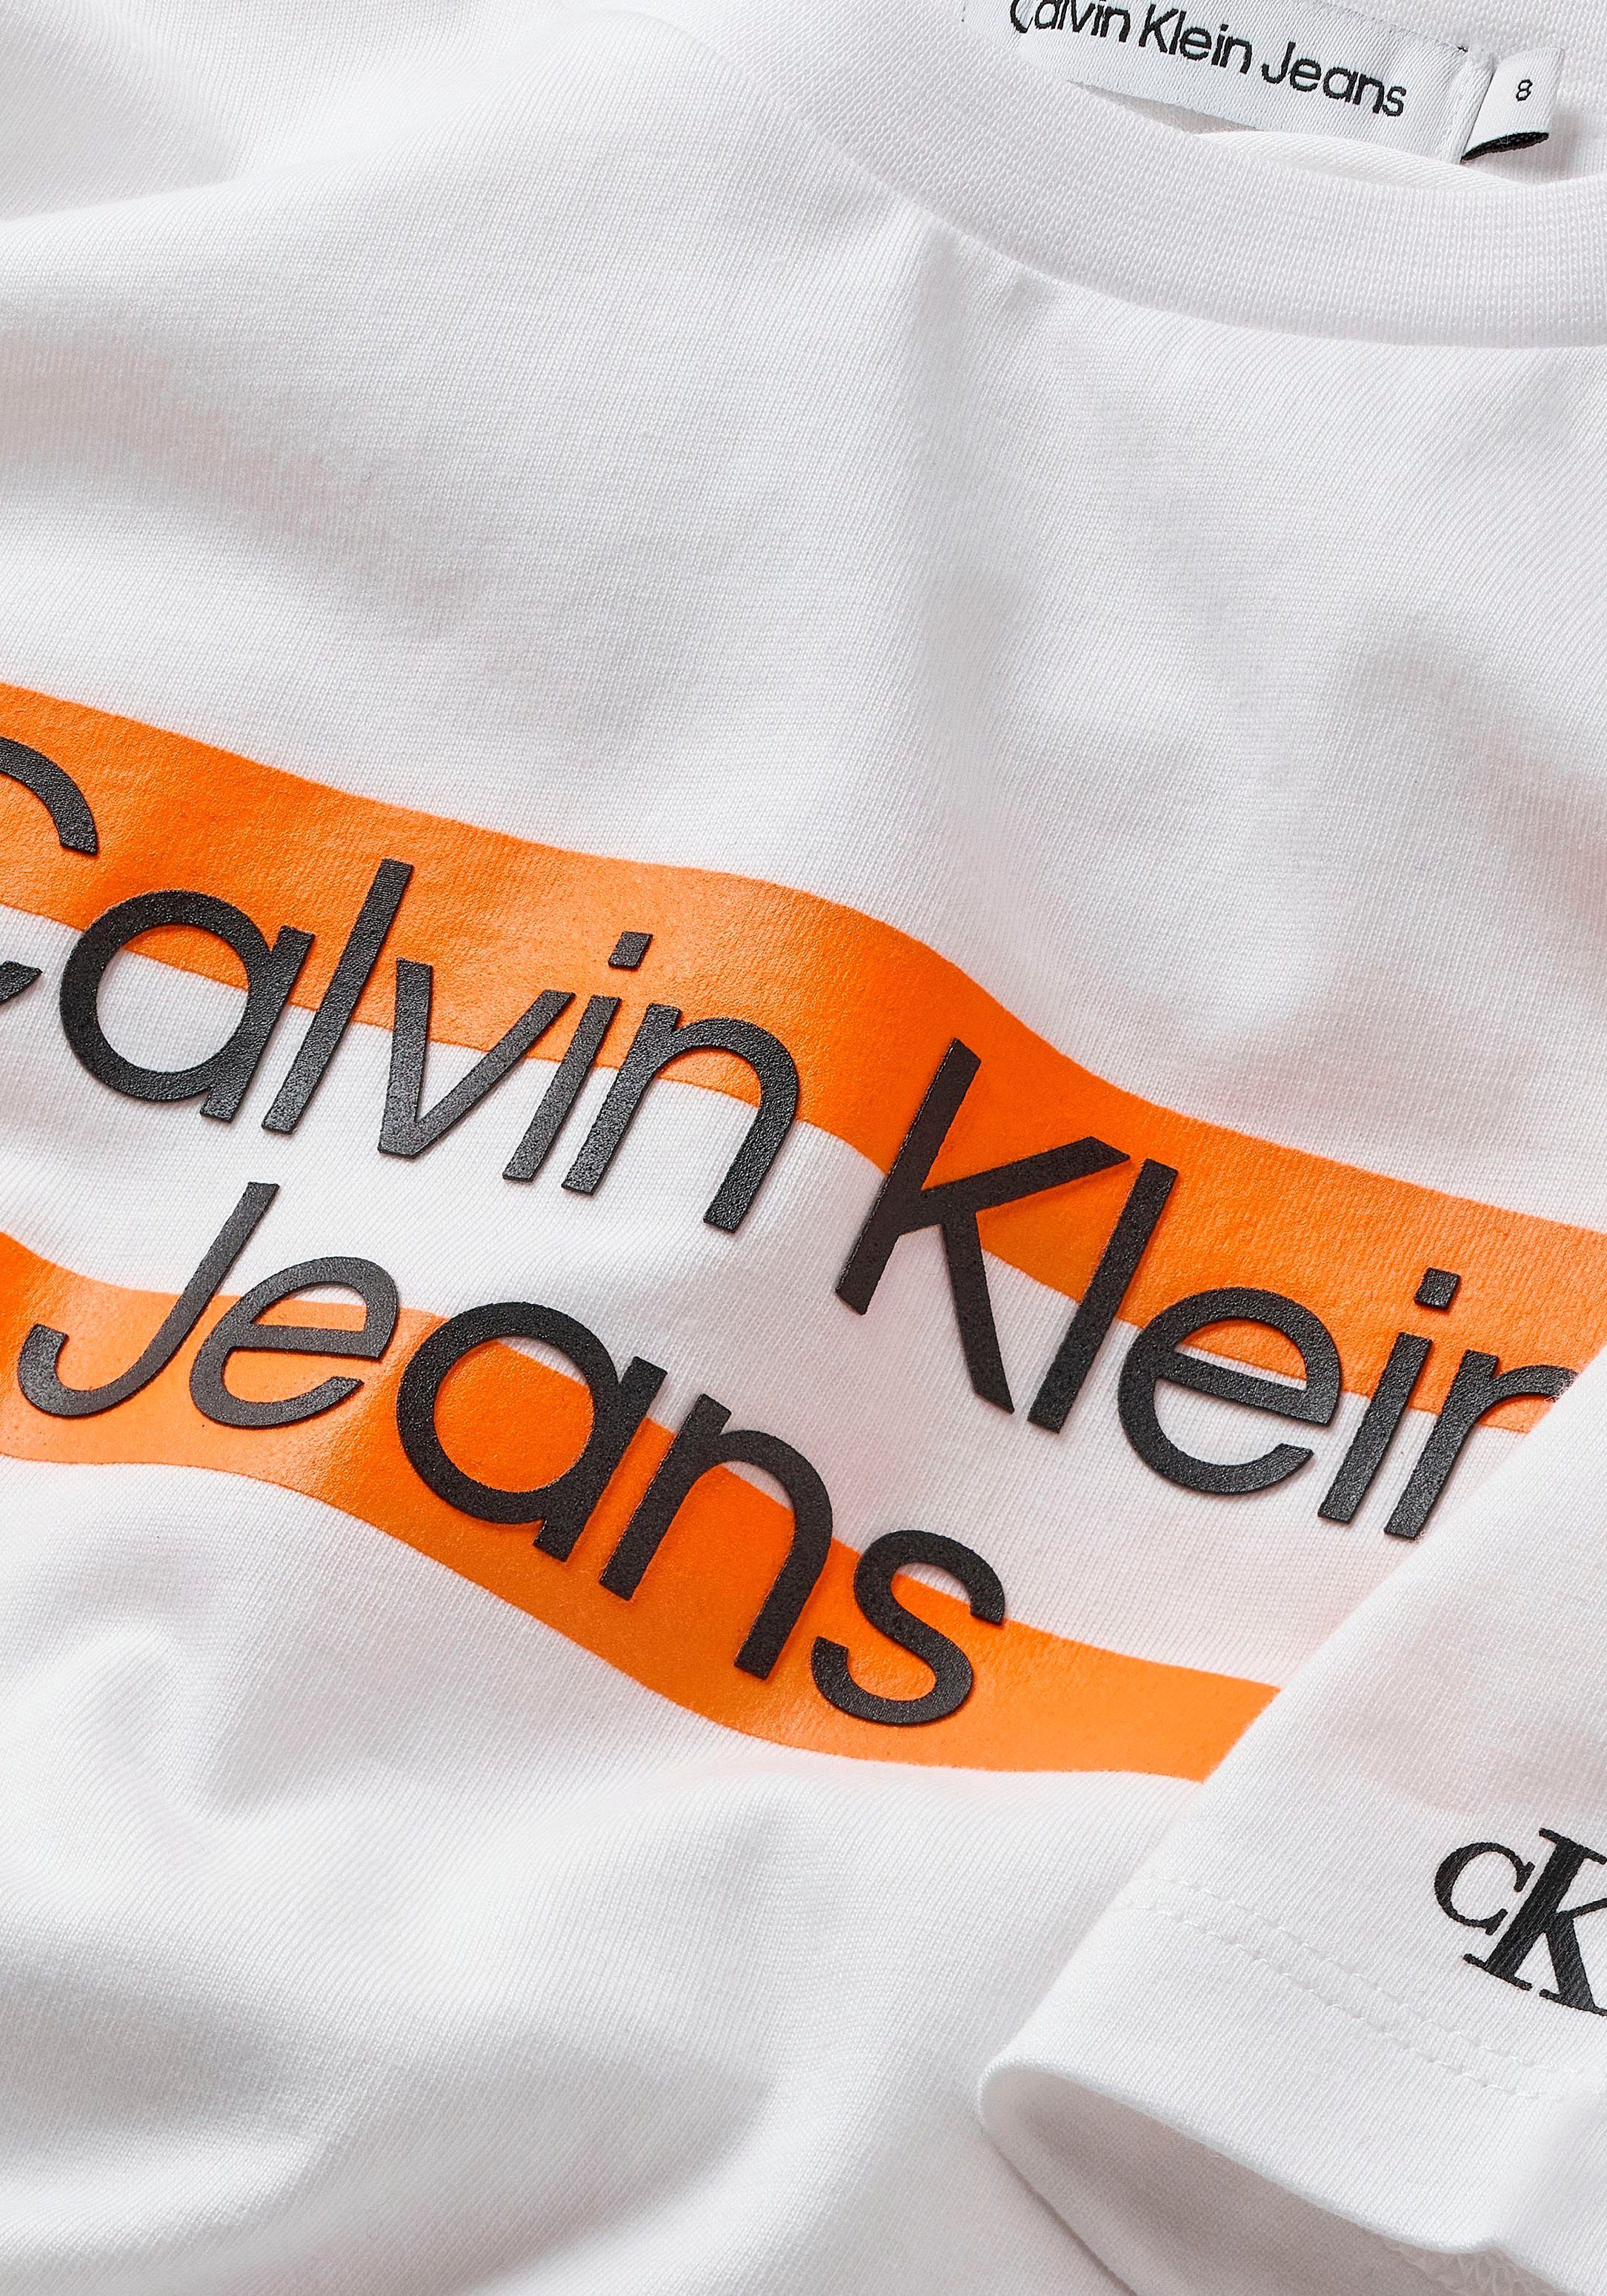 Calvin Klein Jeans Brust Logodruck T-Shirt Calvin Klein auf weiß mit der